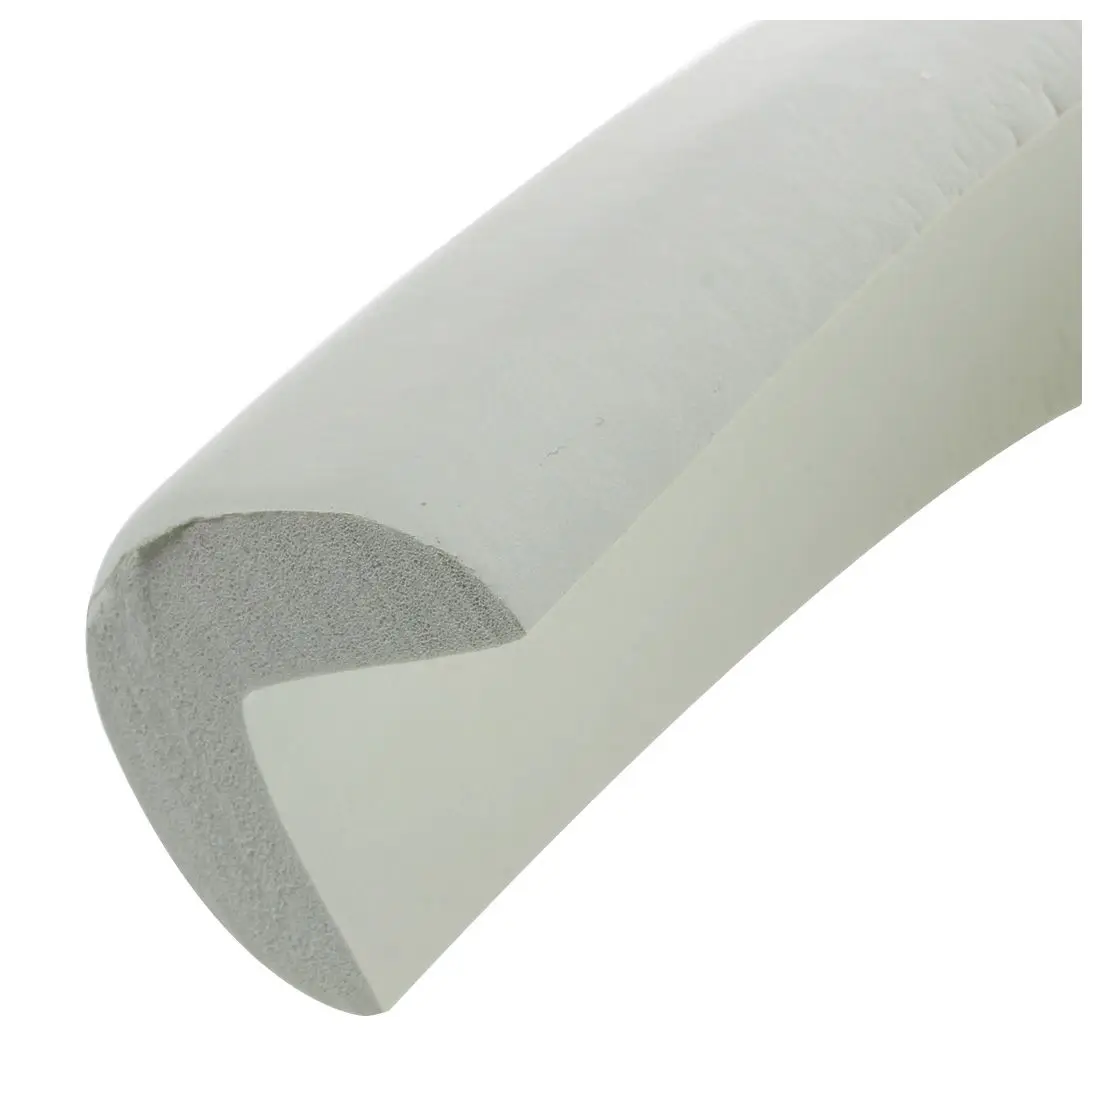 Childproof краевой защитный кожух длина подушки 2 м включены клей (белый)